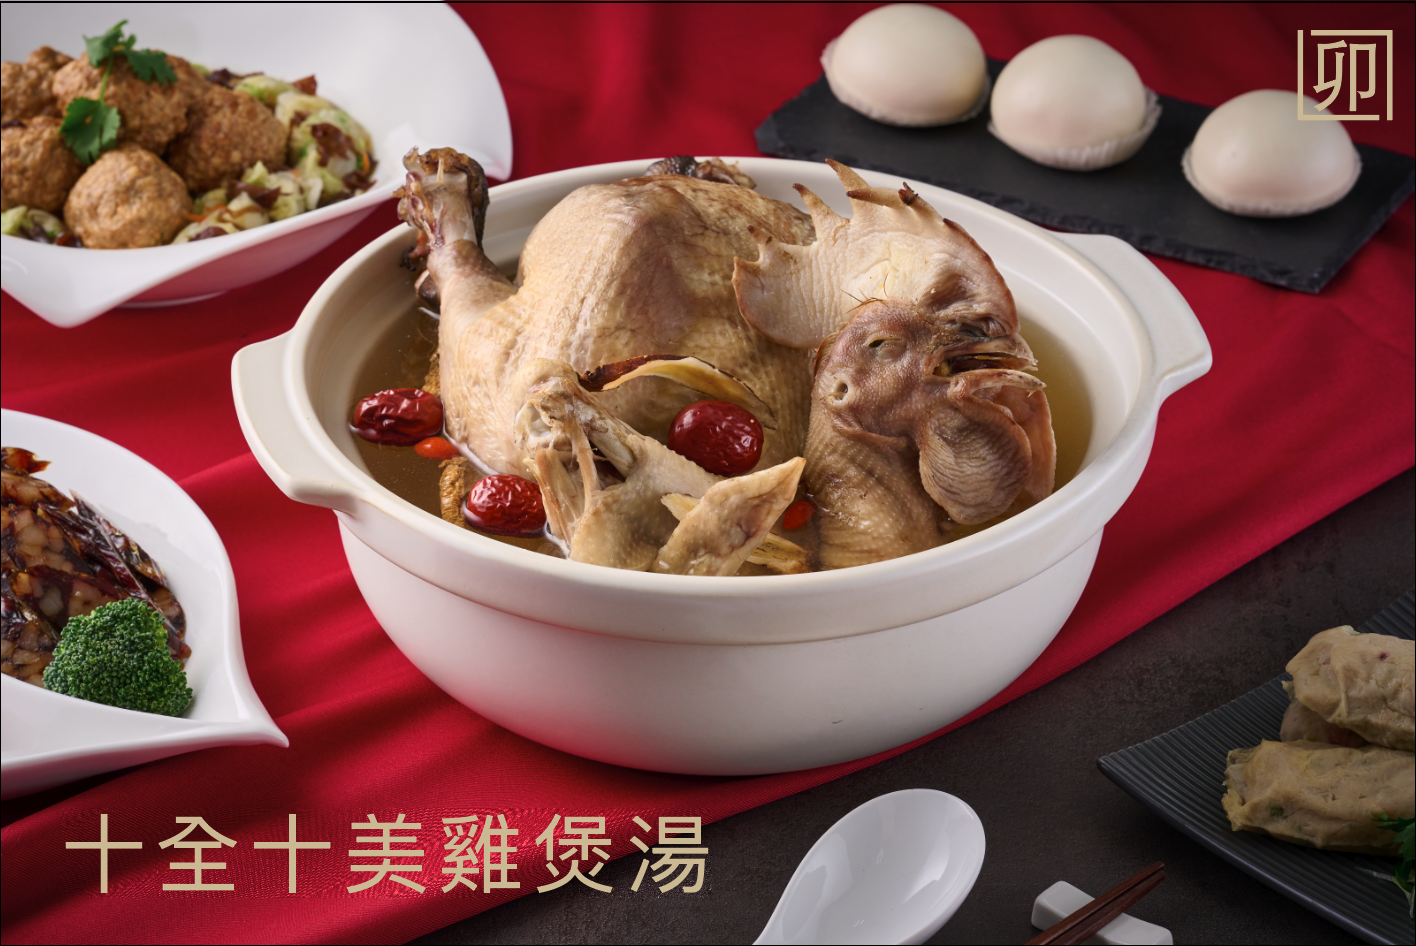 【爾東食府】X【無限嚴選】聯名台粵美食 - 十全雞煲湯